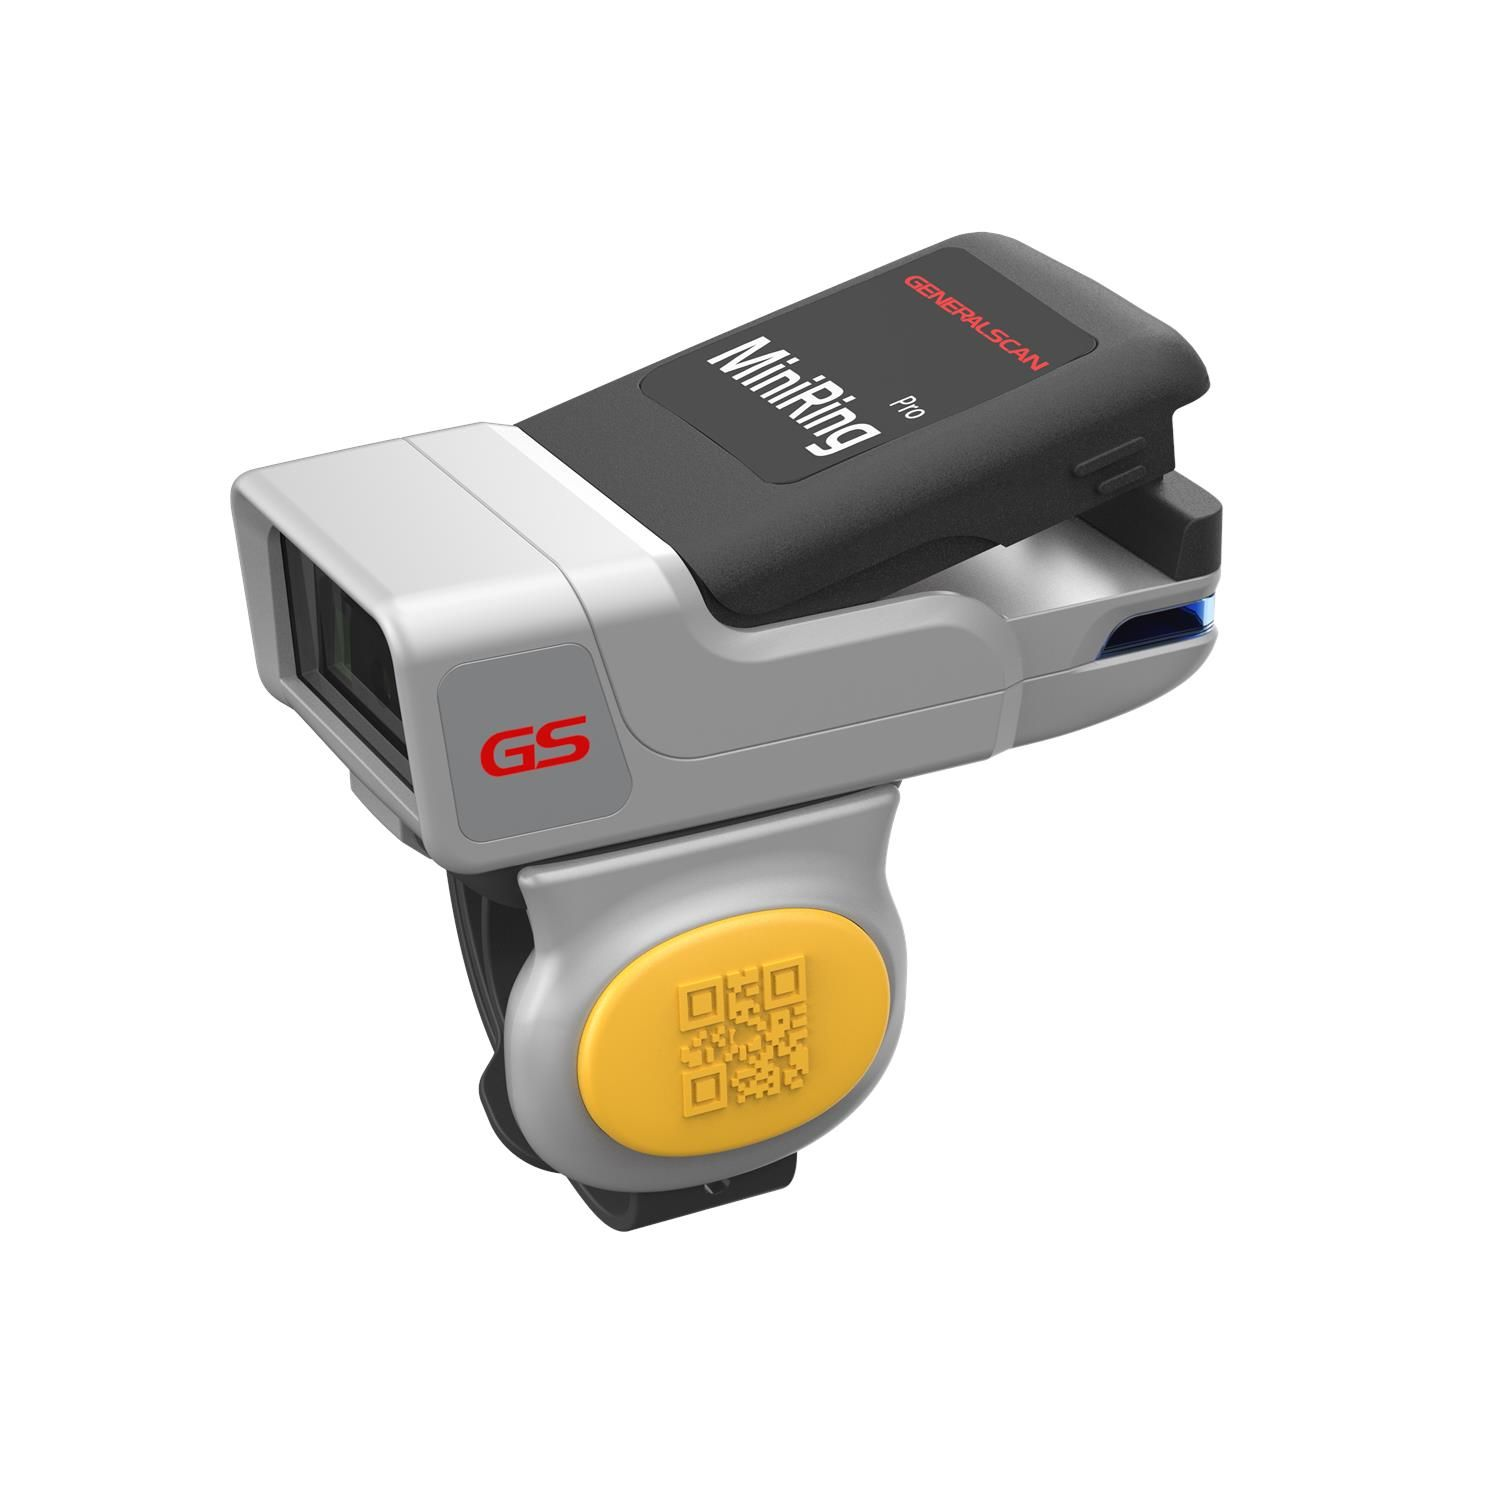 GS GENERALSCAN Scanner Barcode R3521,